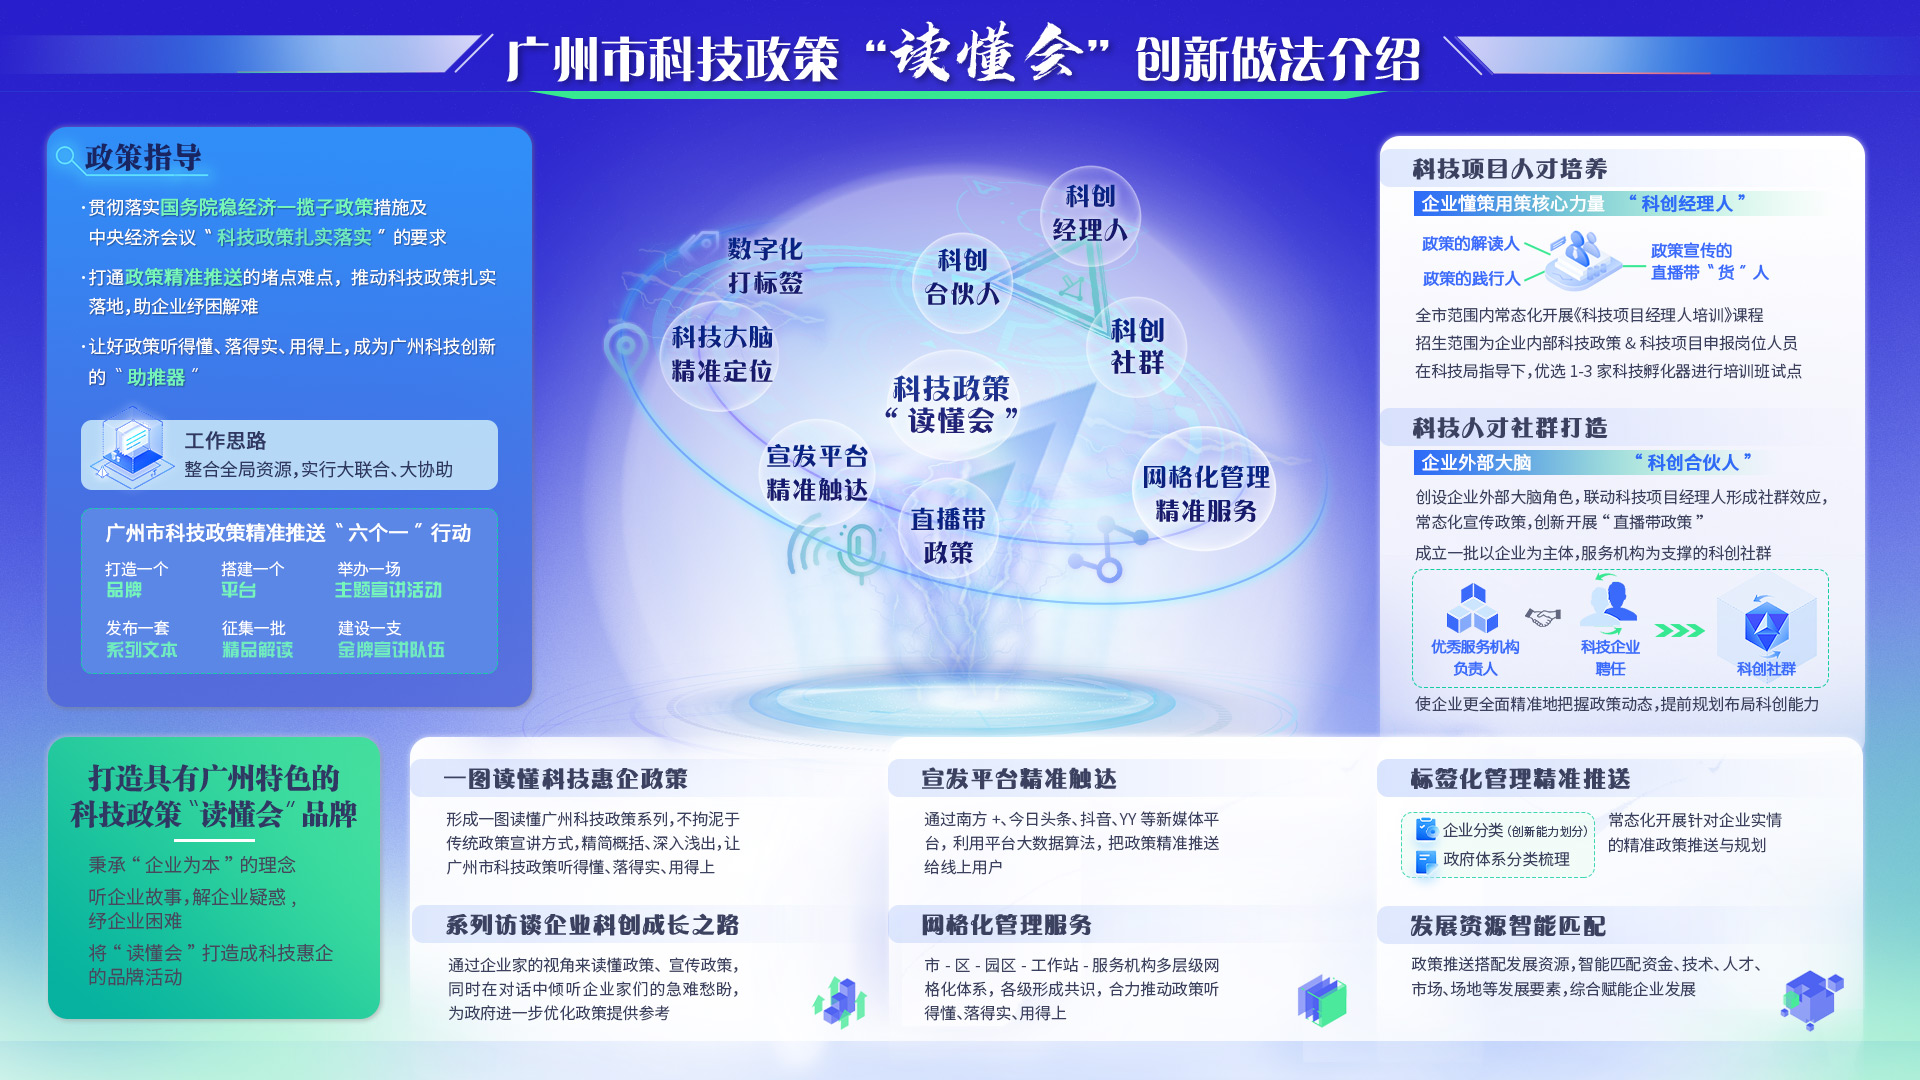 广州市科技政策“读懂会”创新做法介绍.jpg